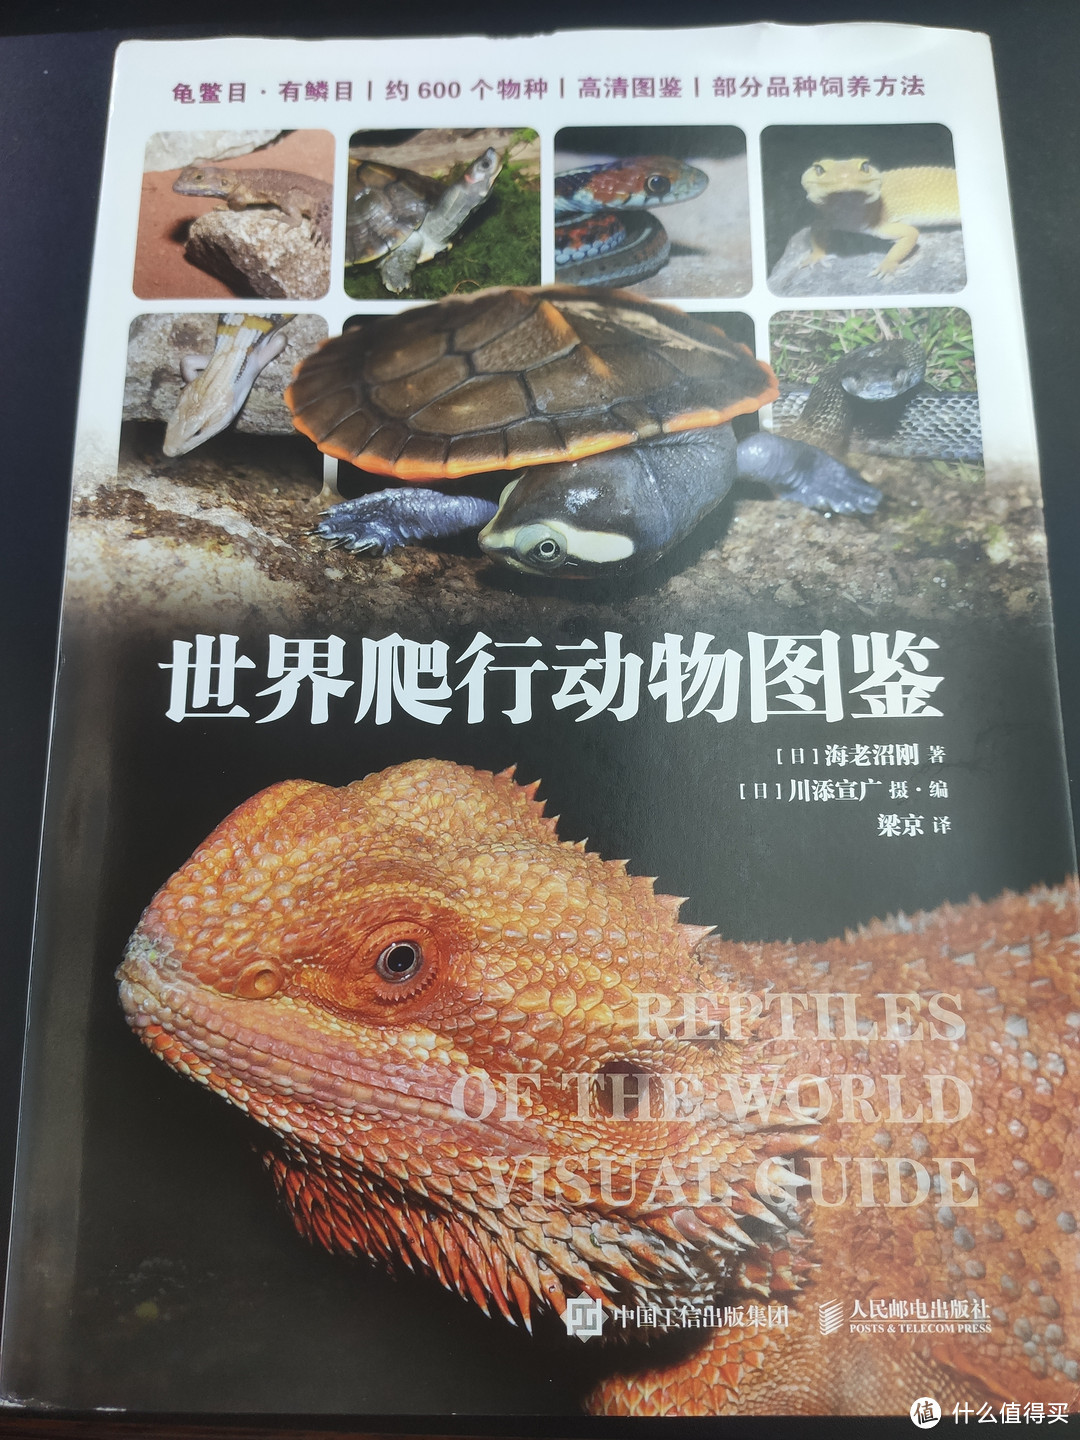 这是一本爬行类养殖手册